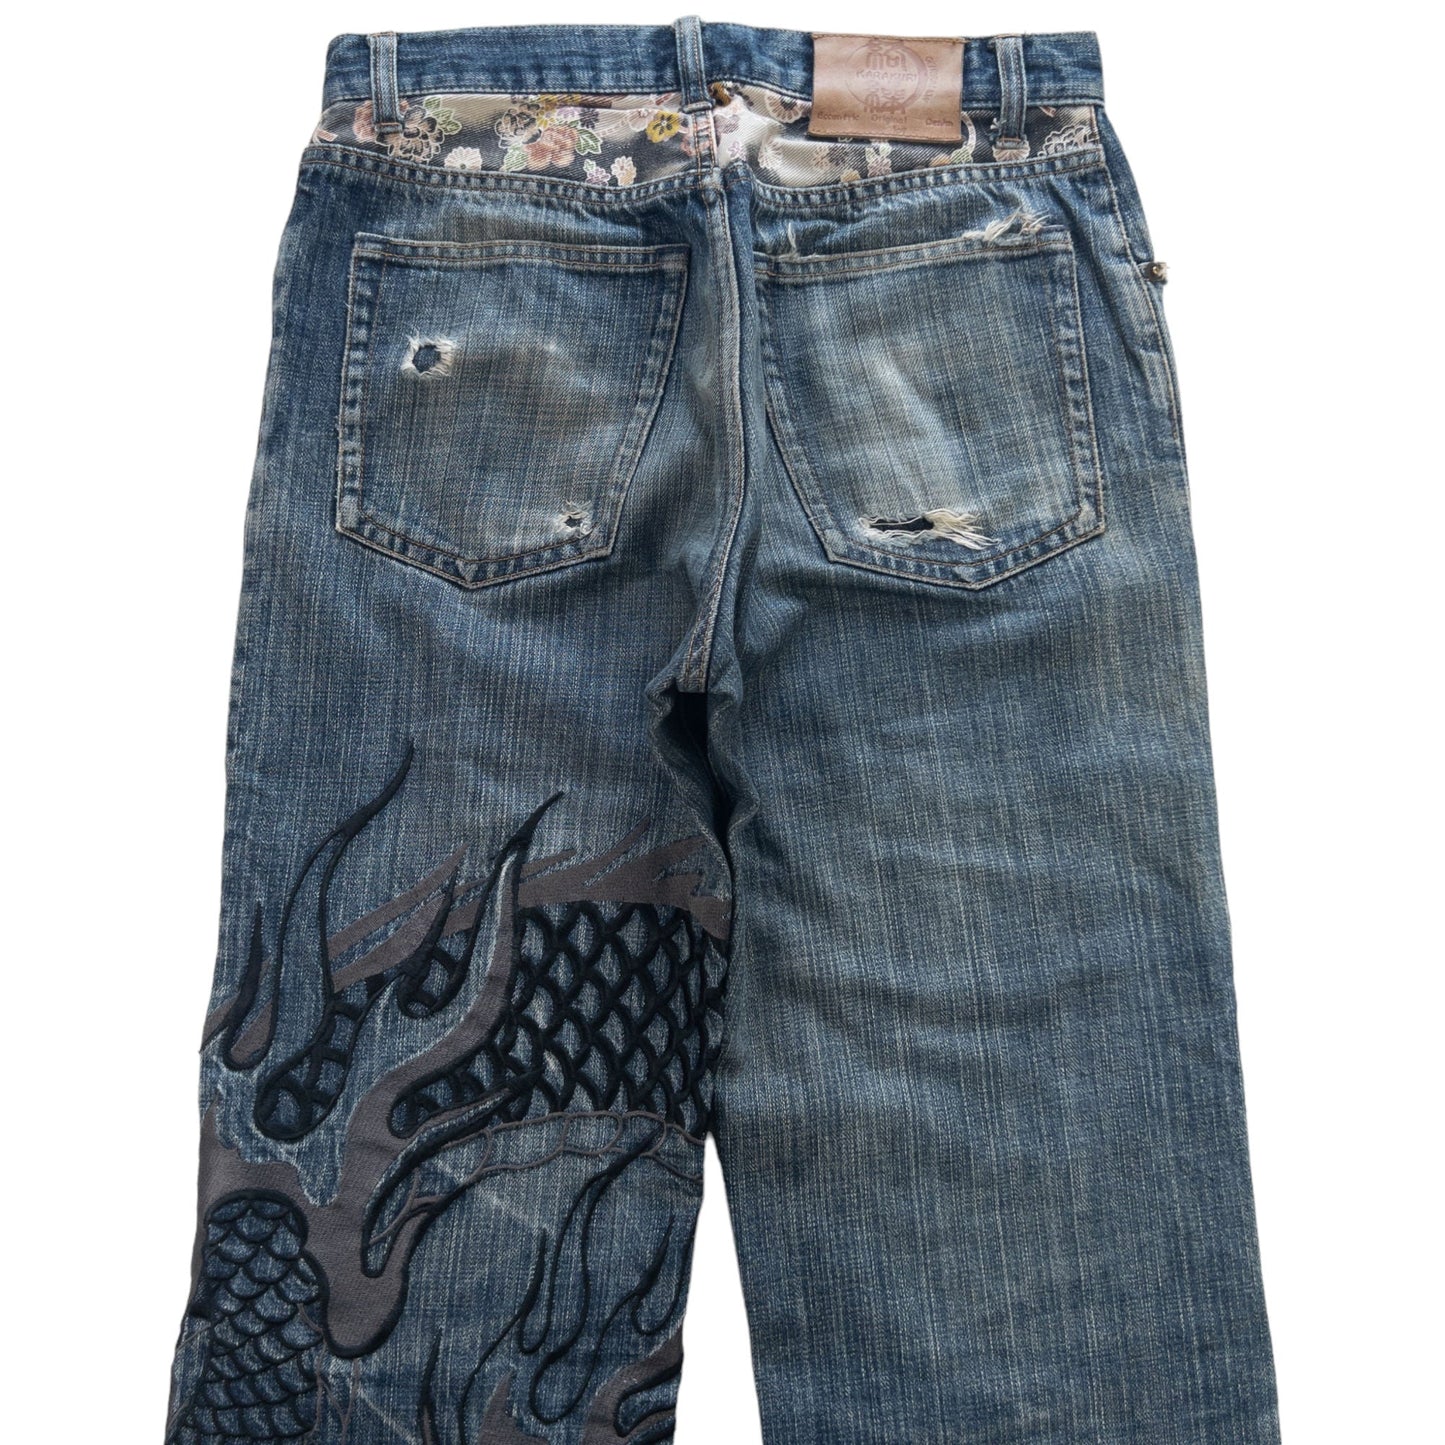 Vintage Kara Kuri Dragon Japanese Denim Jeans Size W30